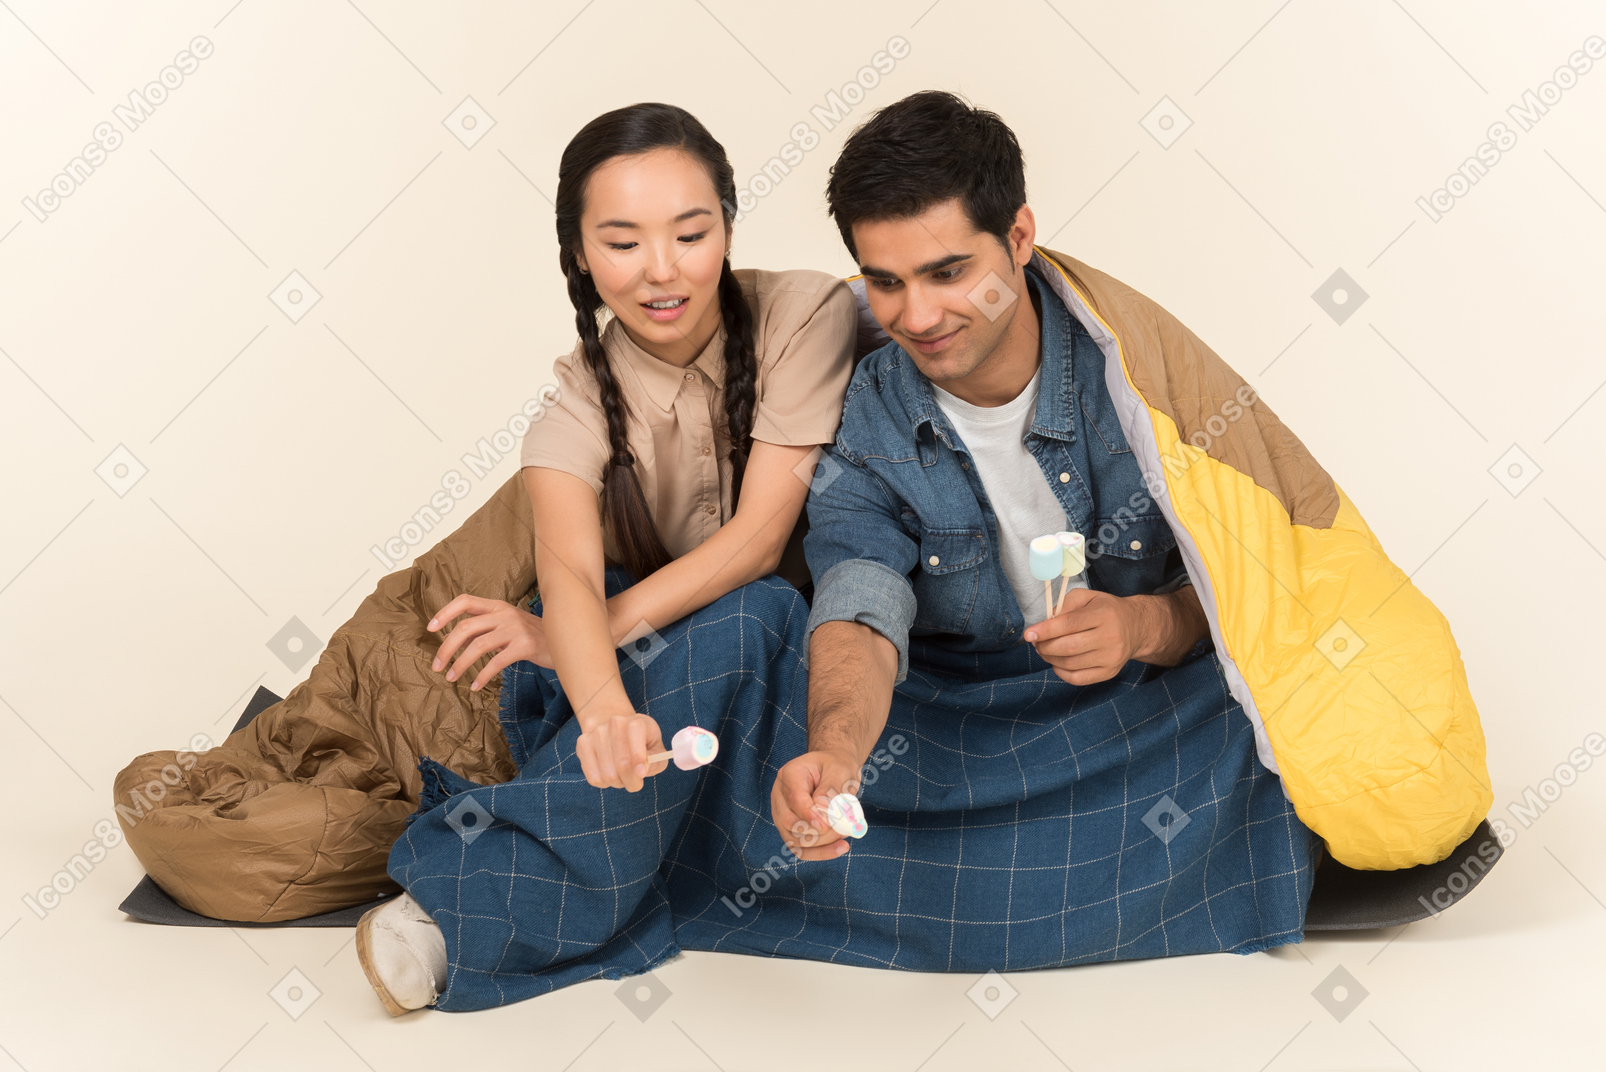 Молодая межрасовая пара сидит в спальном мешке и держит зефир